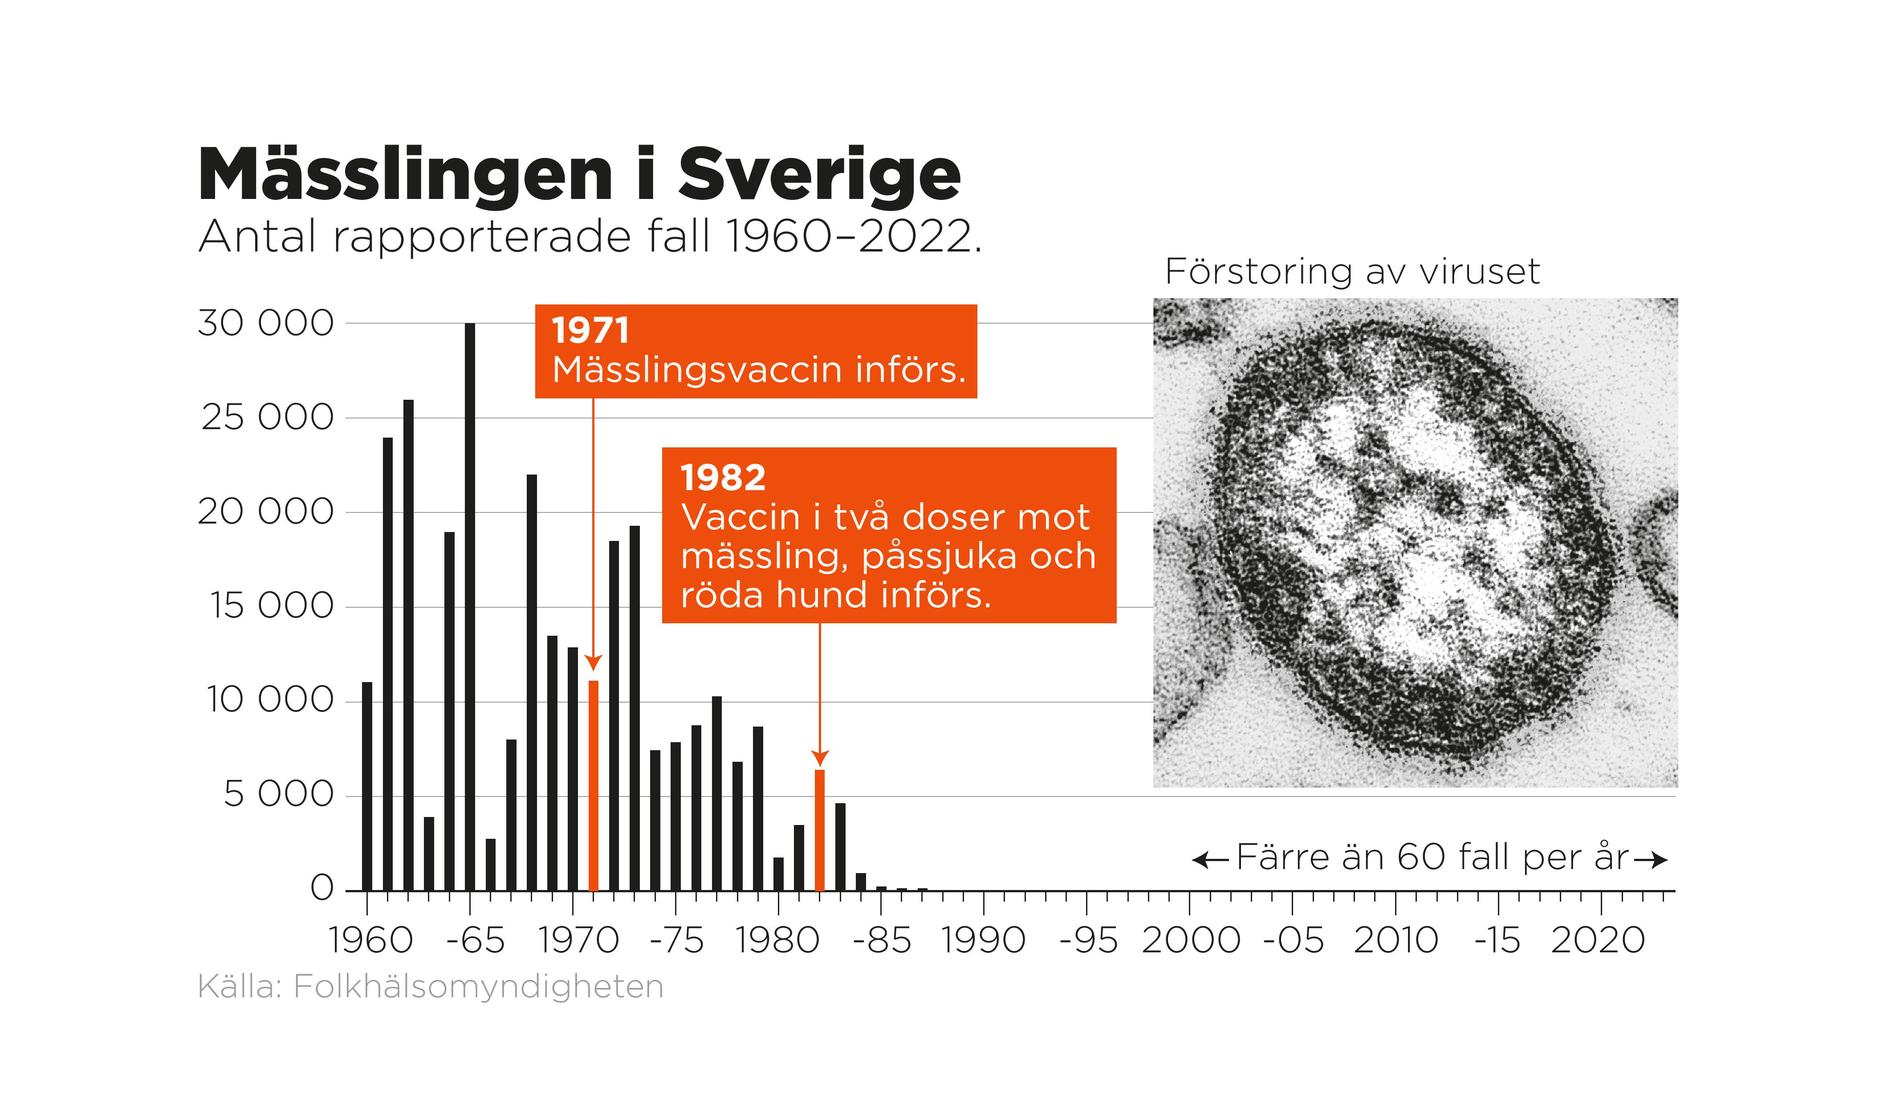 Antal rapporterade fall av mässling i Sverige mellan 1960 och 2022.